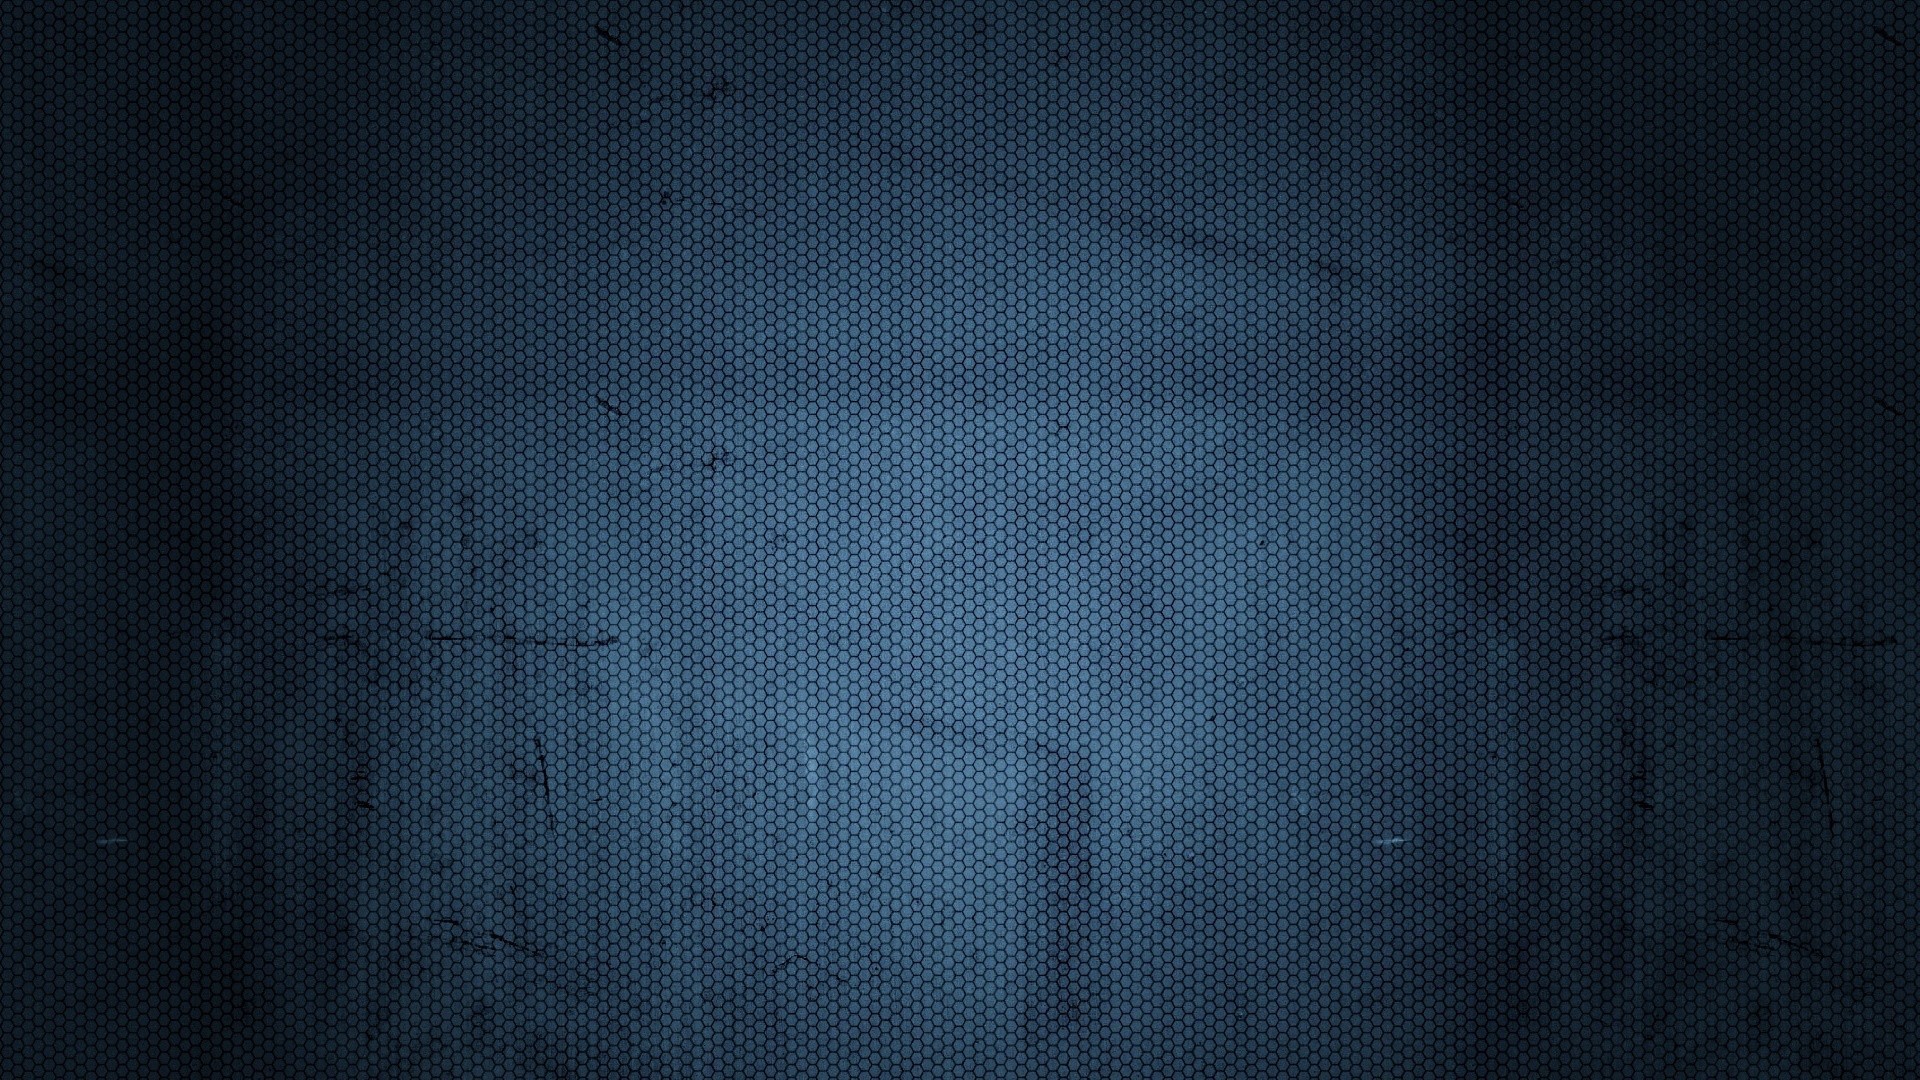 1920x1080 Hd Dark Blue Wallpapers .